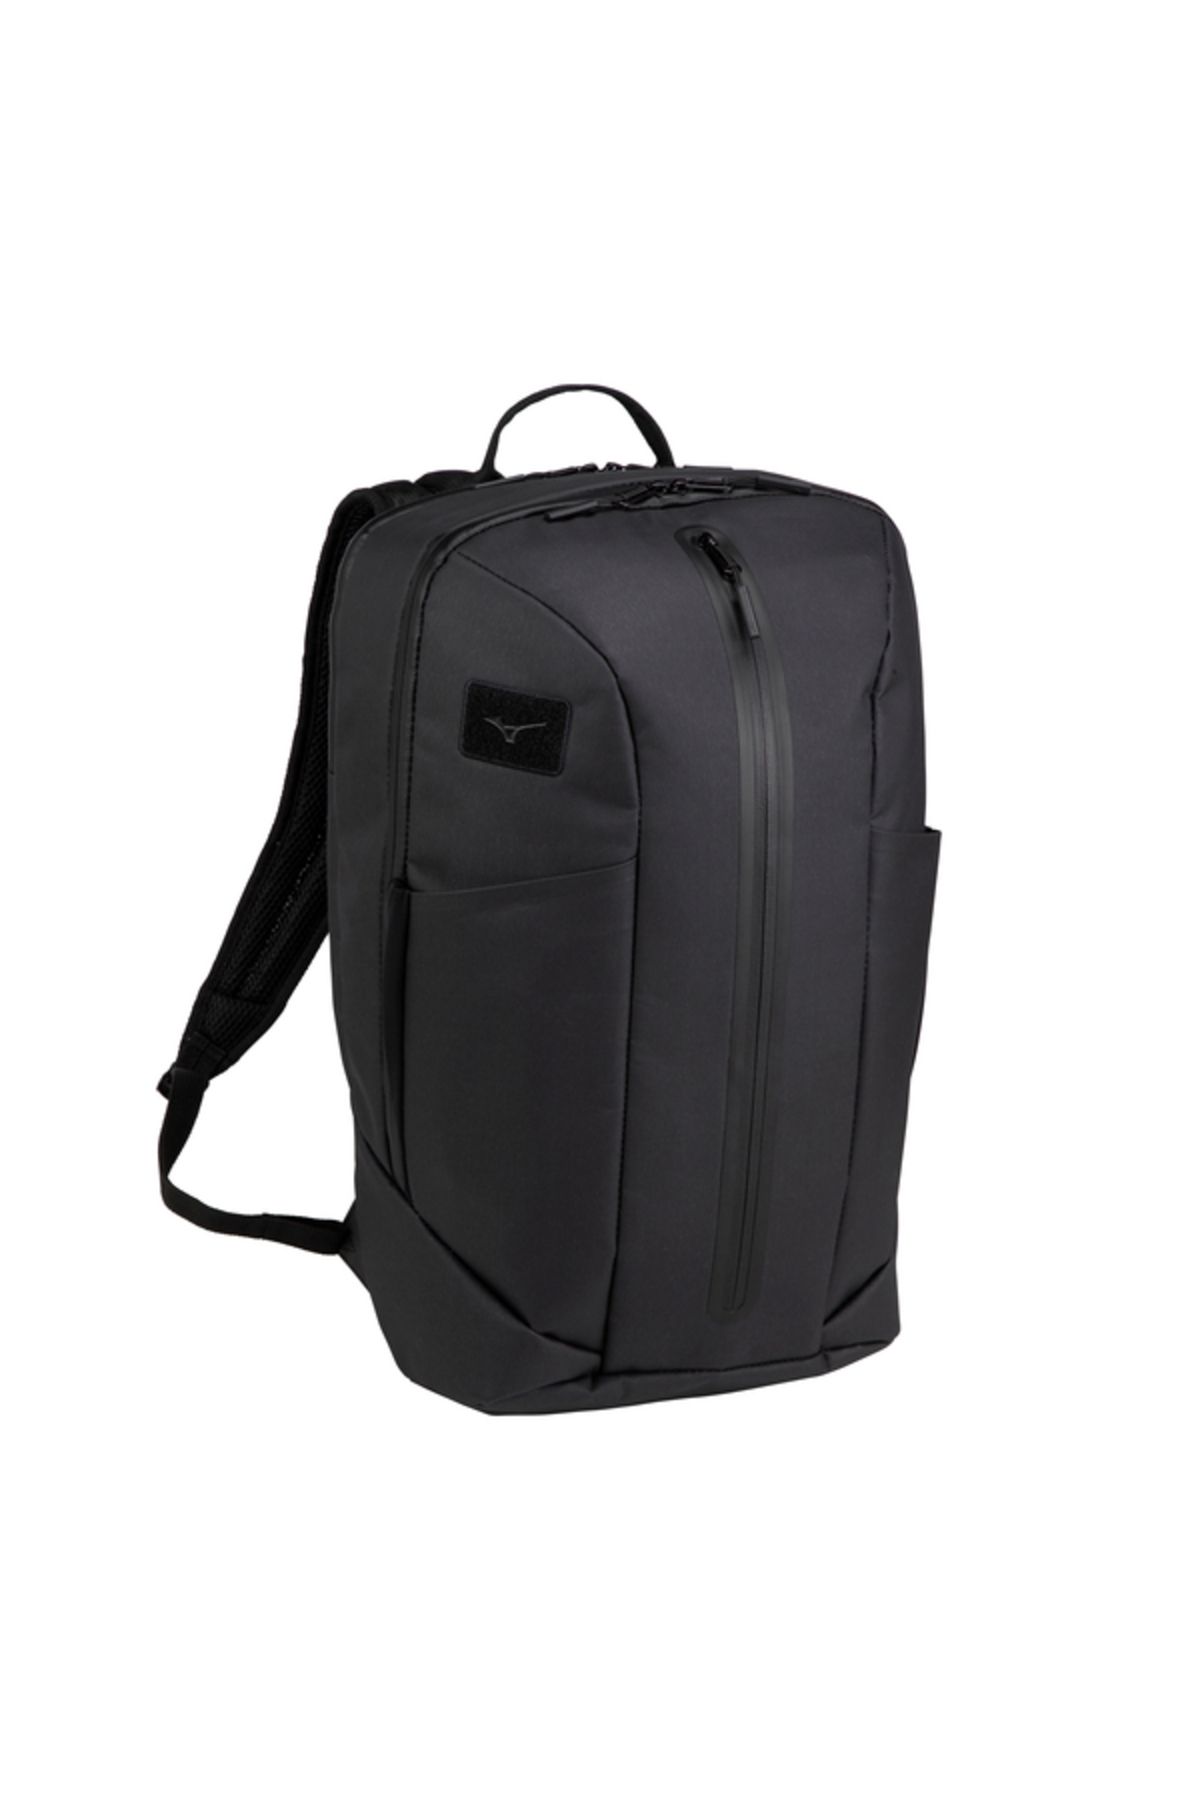 Mizuno Backpack 25 WP Unisex Sırt Çantası Siyah